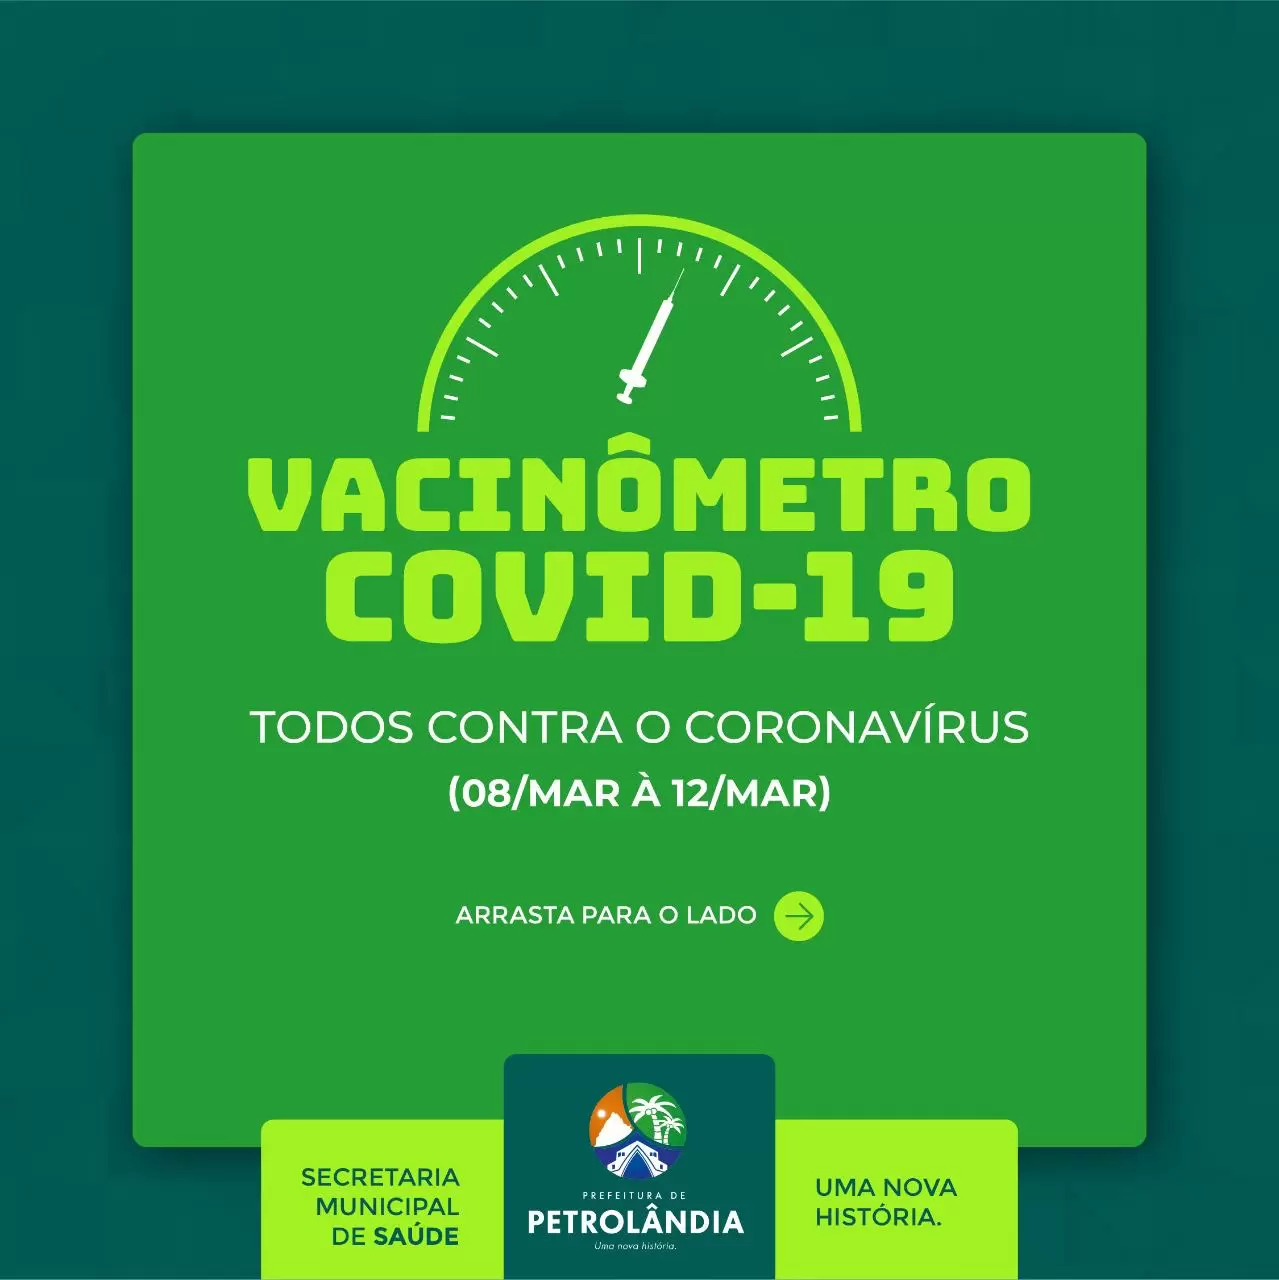 PETROLÂNDIA: Confira os números de vacinação contra Covid-19 realizadas de 08 a 12 de março no município